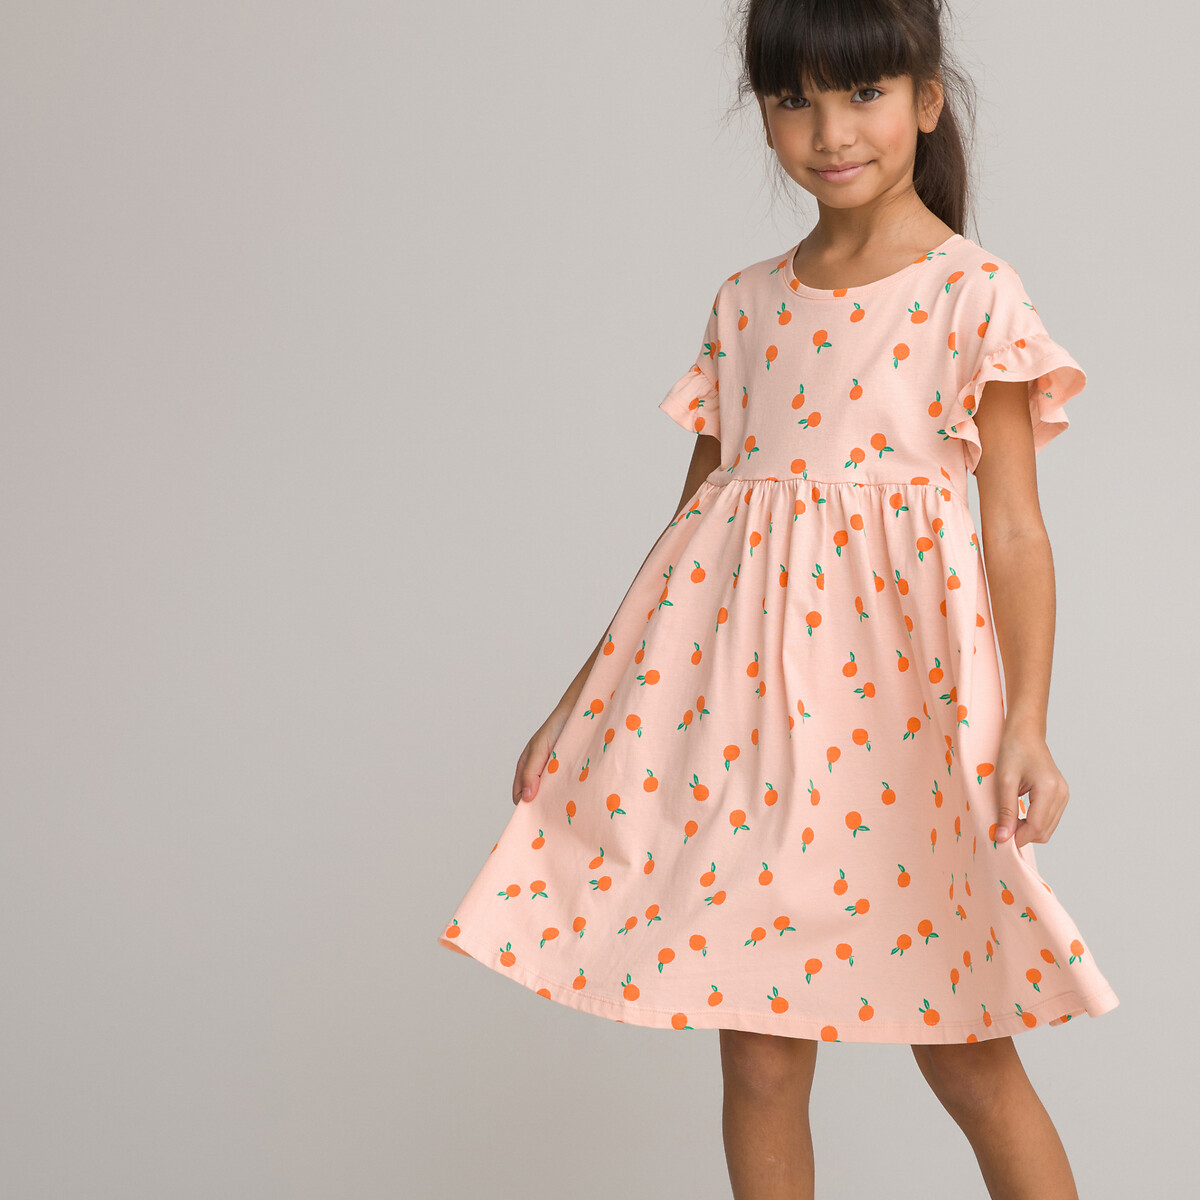 Платье С короткими рукавами и принтом фрукты 8 лет - 126 см розовый